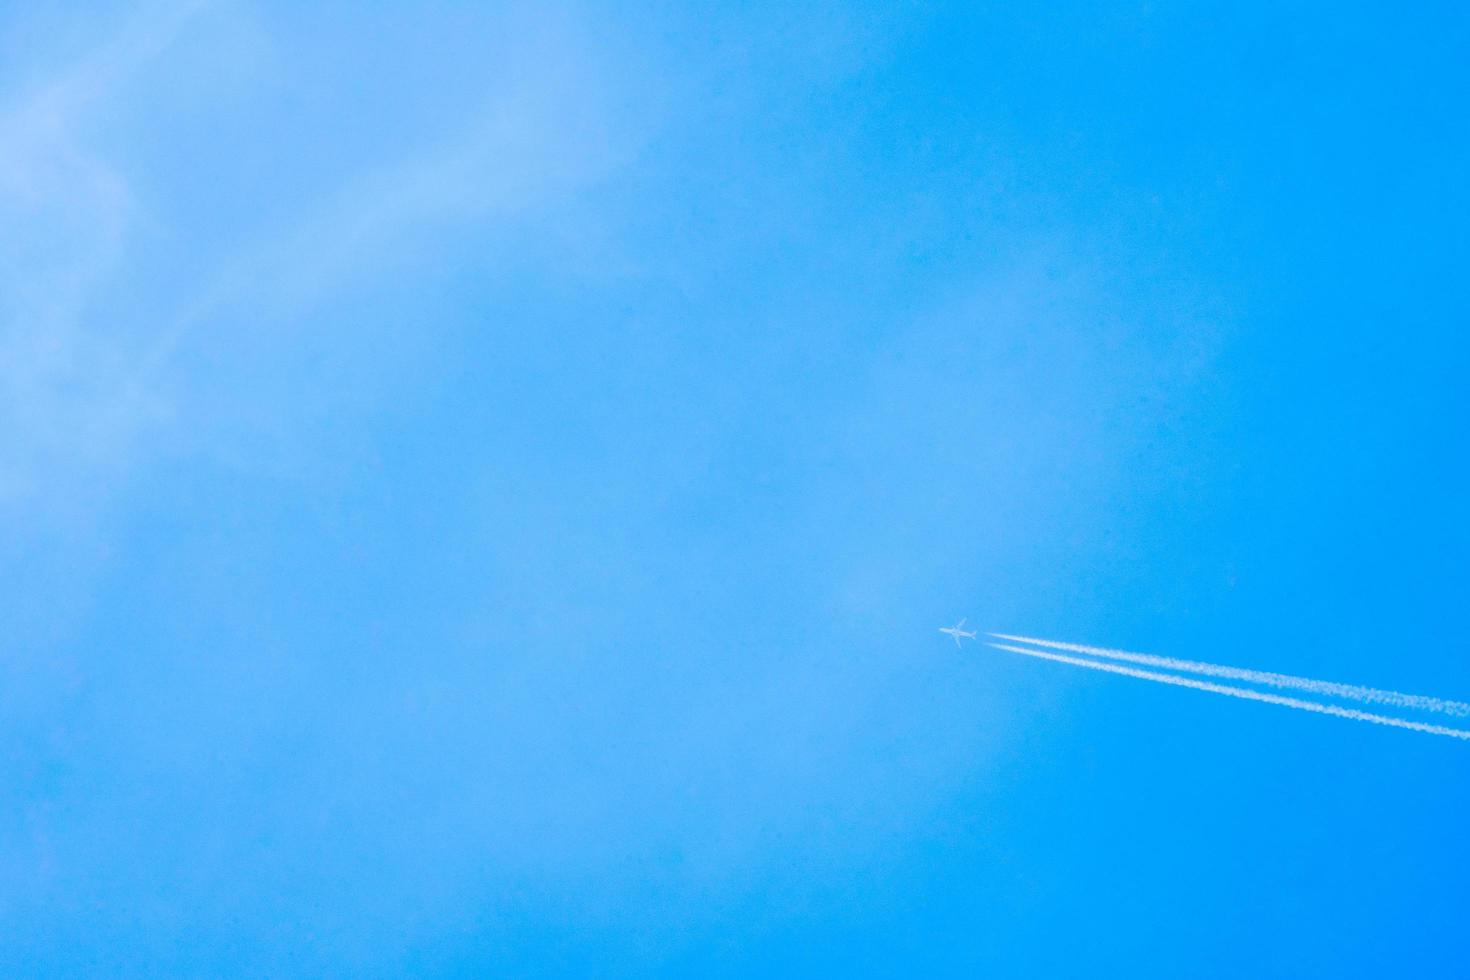 aereo che vola nel cielo azzurro con scia bianca lungo il percorso. getto con scia di condensazione ad alta velocità foto